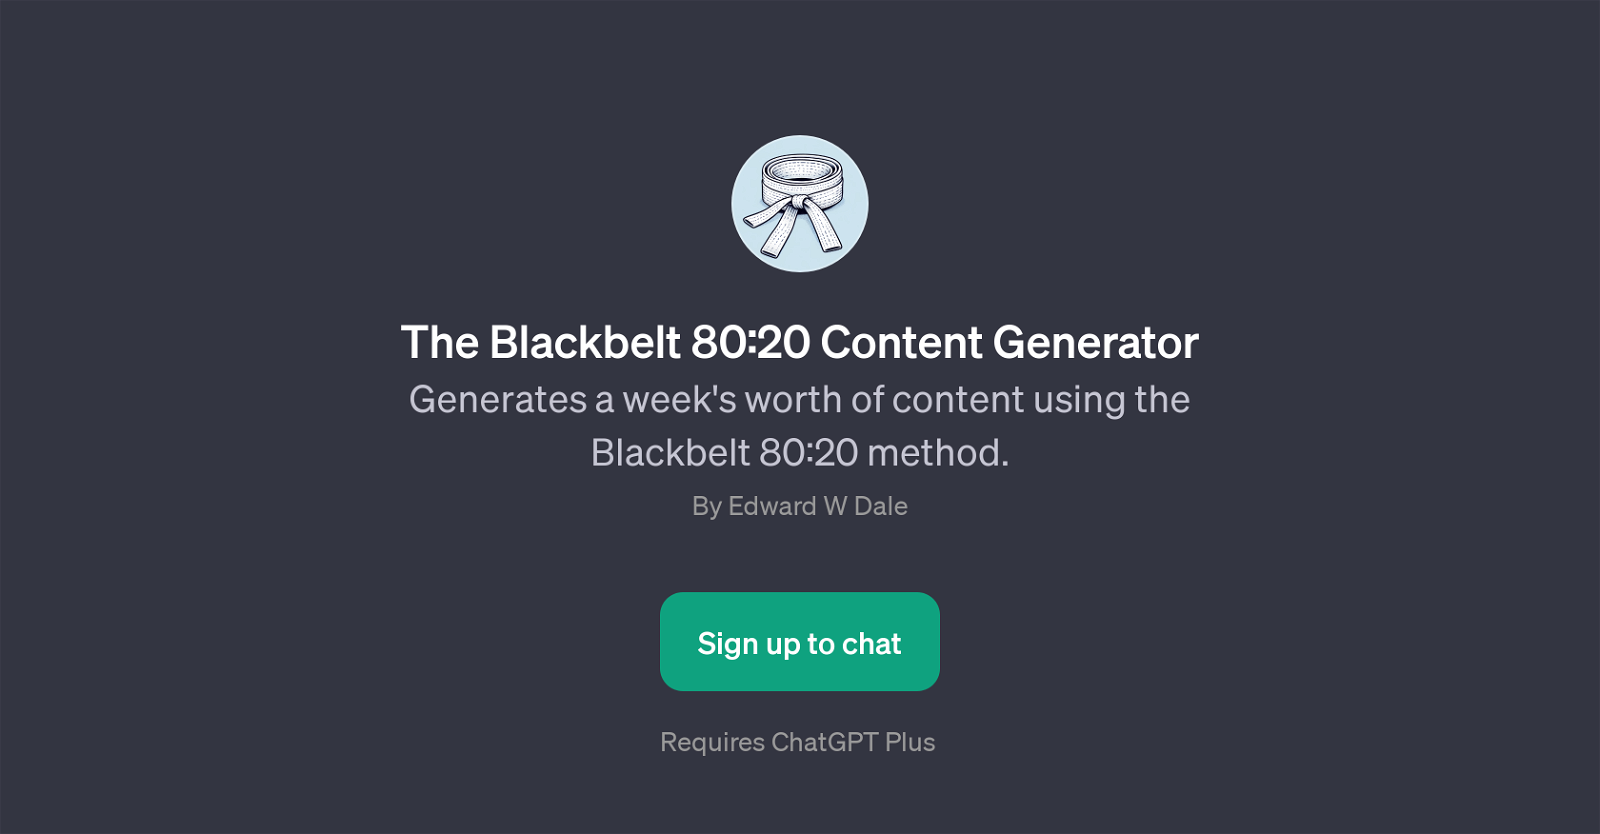 The Blackbelt 80:20 Content Generator website